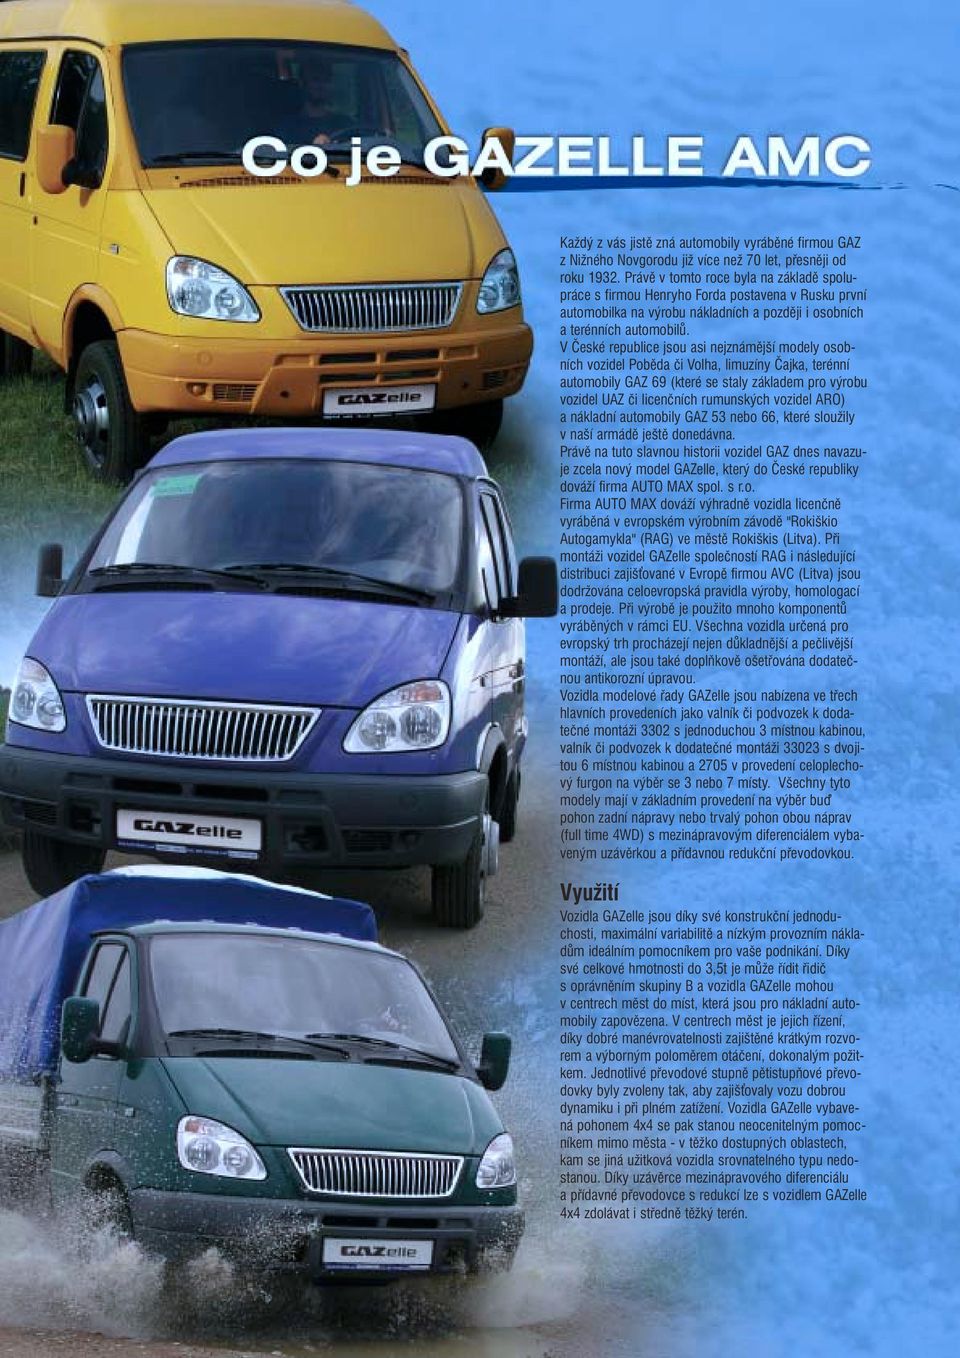 V České republice jsou asi nejznámější modely osobních vozidel Poběda či Volha, limuzíny Čajka, terénní automobily GAZ 69 (které se staly základem pro výrobu vozidel UAZ či licenčních rumunských